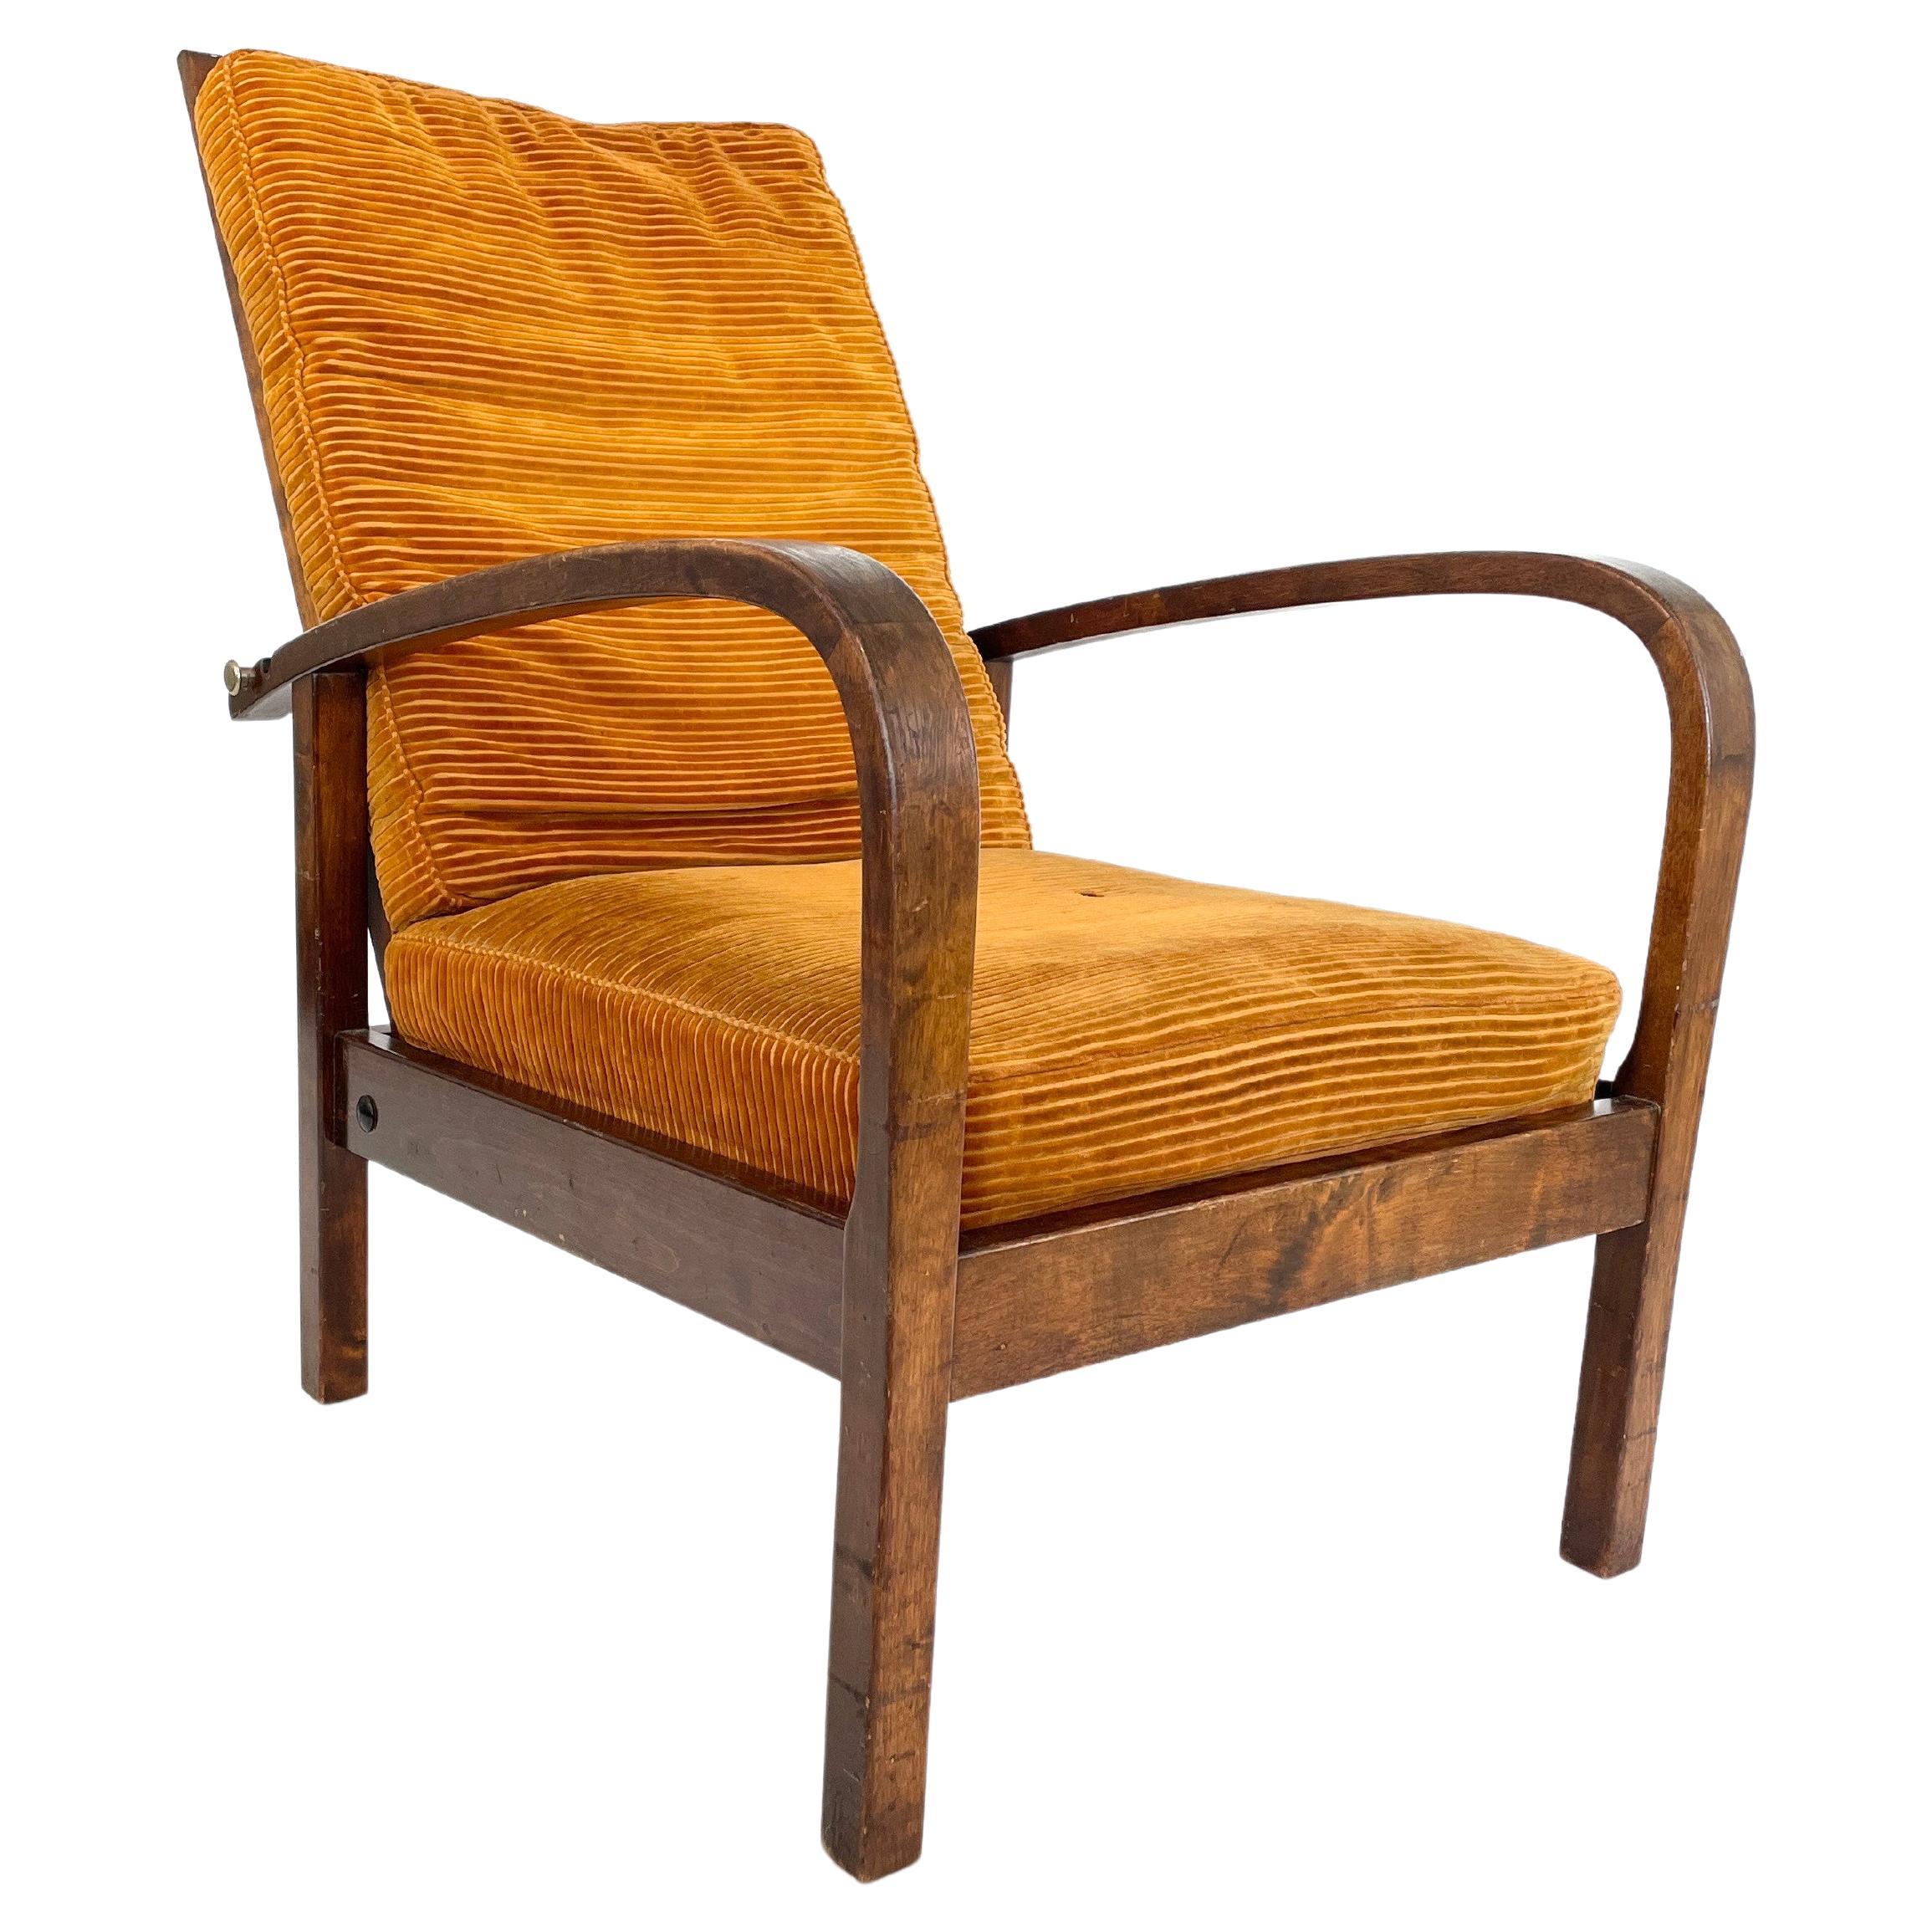 Original Torni Chair by Einari Kyöstilä, Finland, 1930